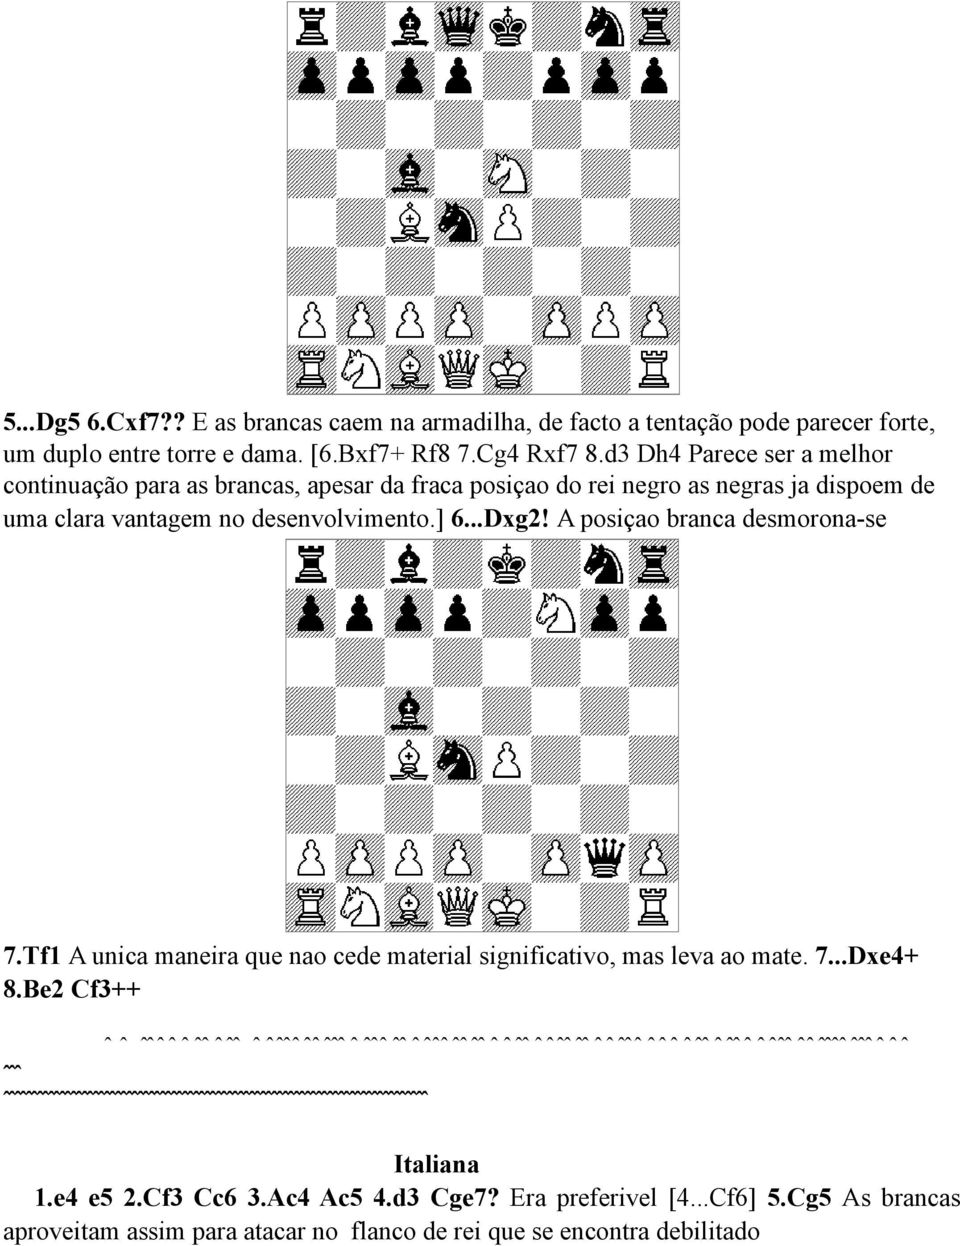 A posiçao branca desmorona-se 7.Tf1 A unica maneira que nao cede material significativo, mas leva ao mate. 7...Dxe4+ 8.